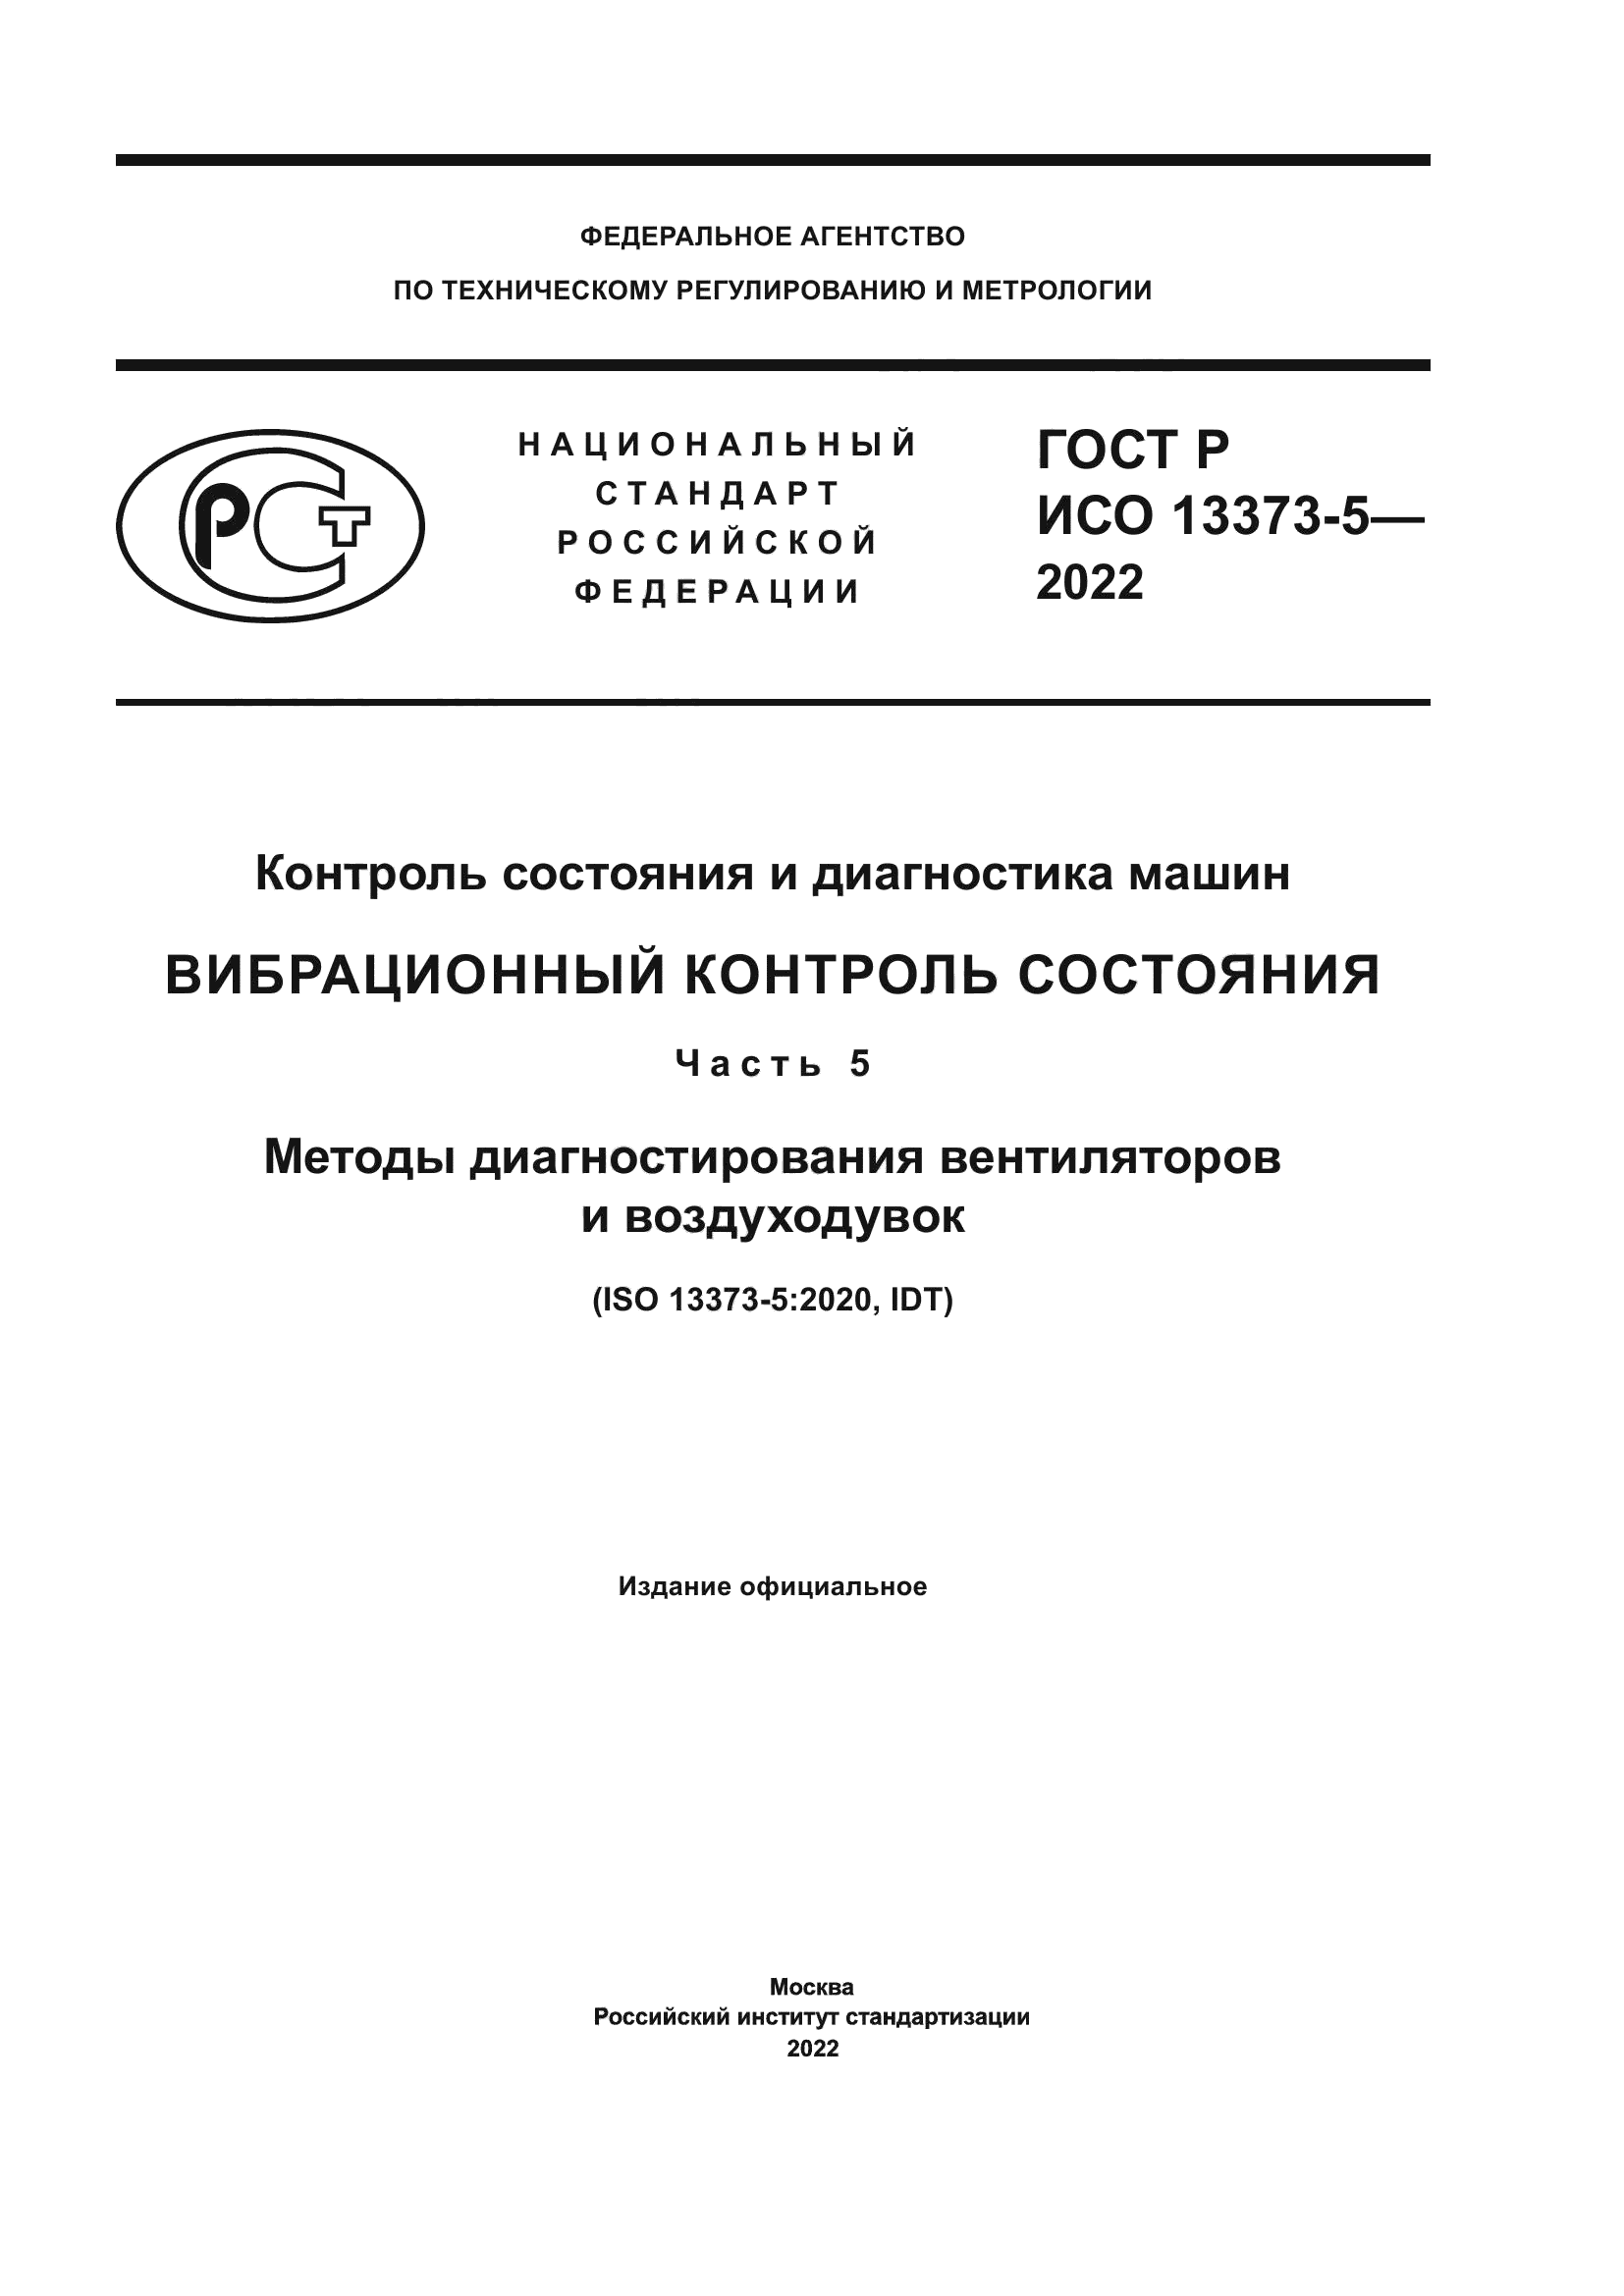 ГОСТ Р ИСО 13373-5-2022